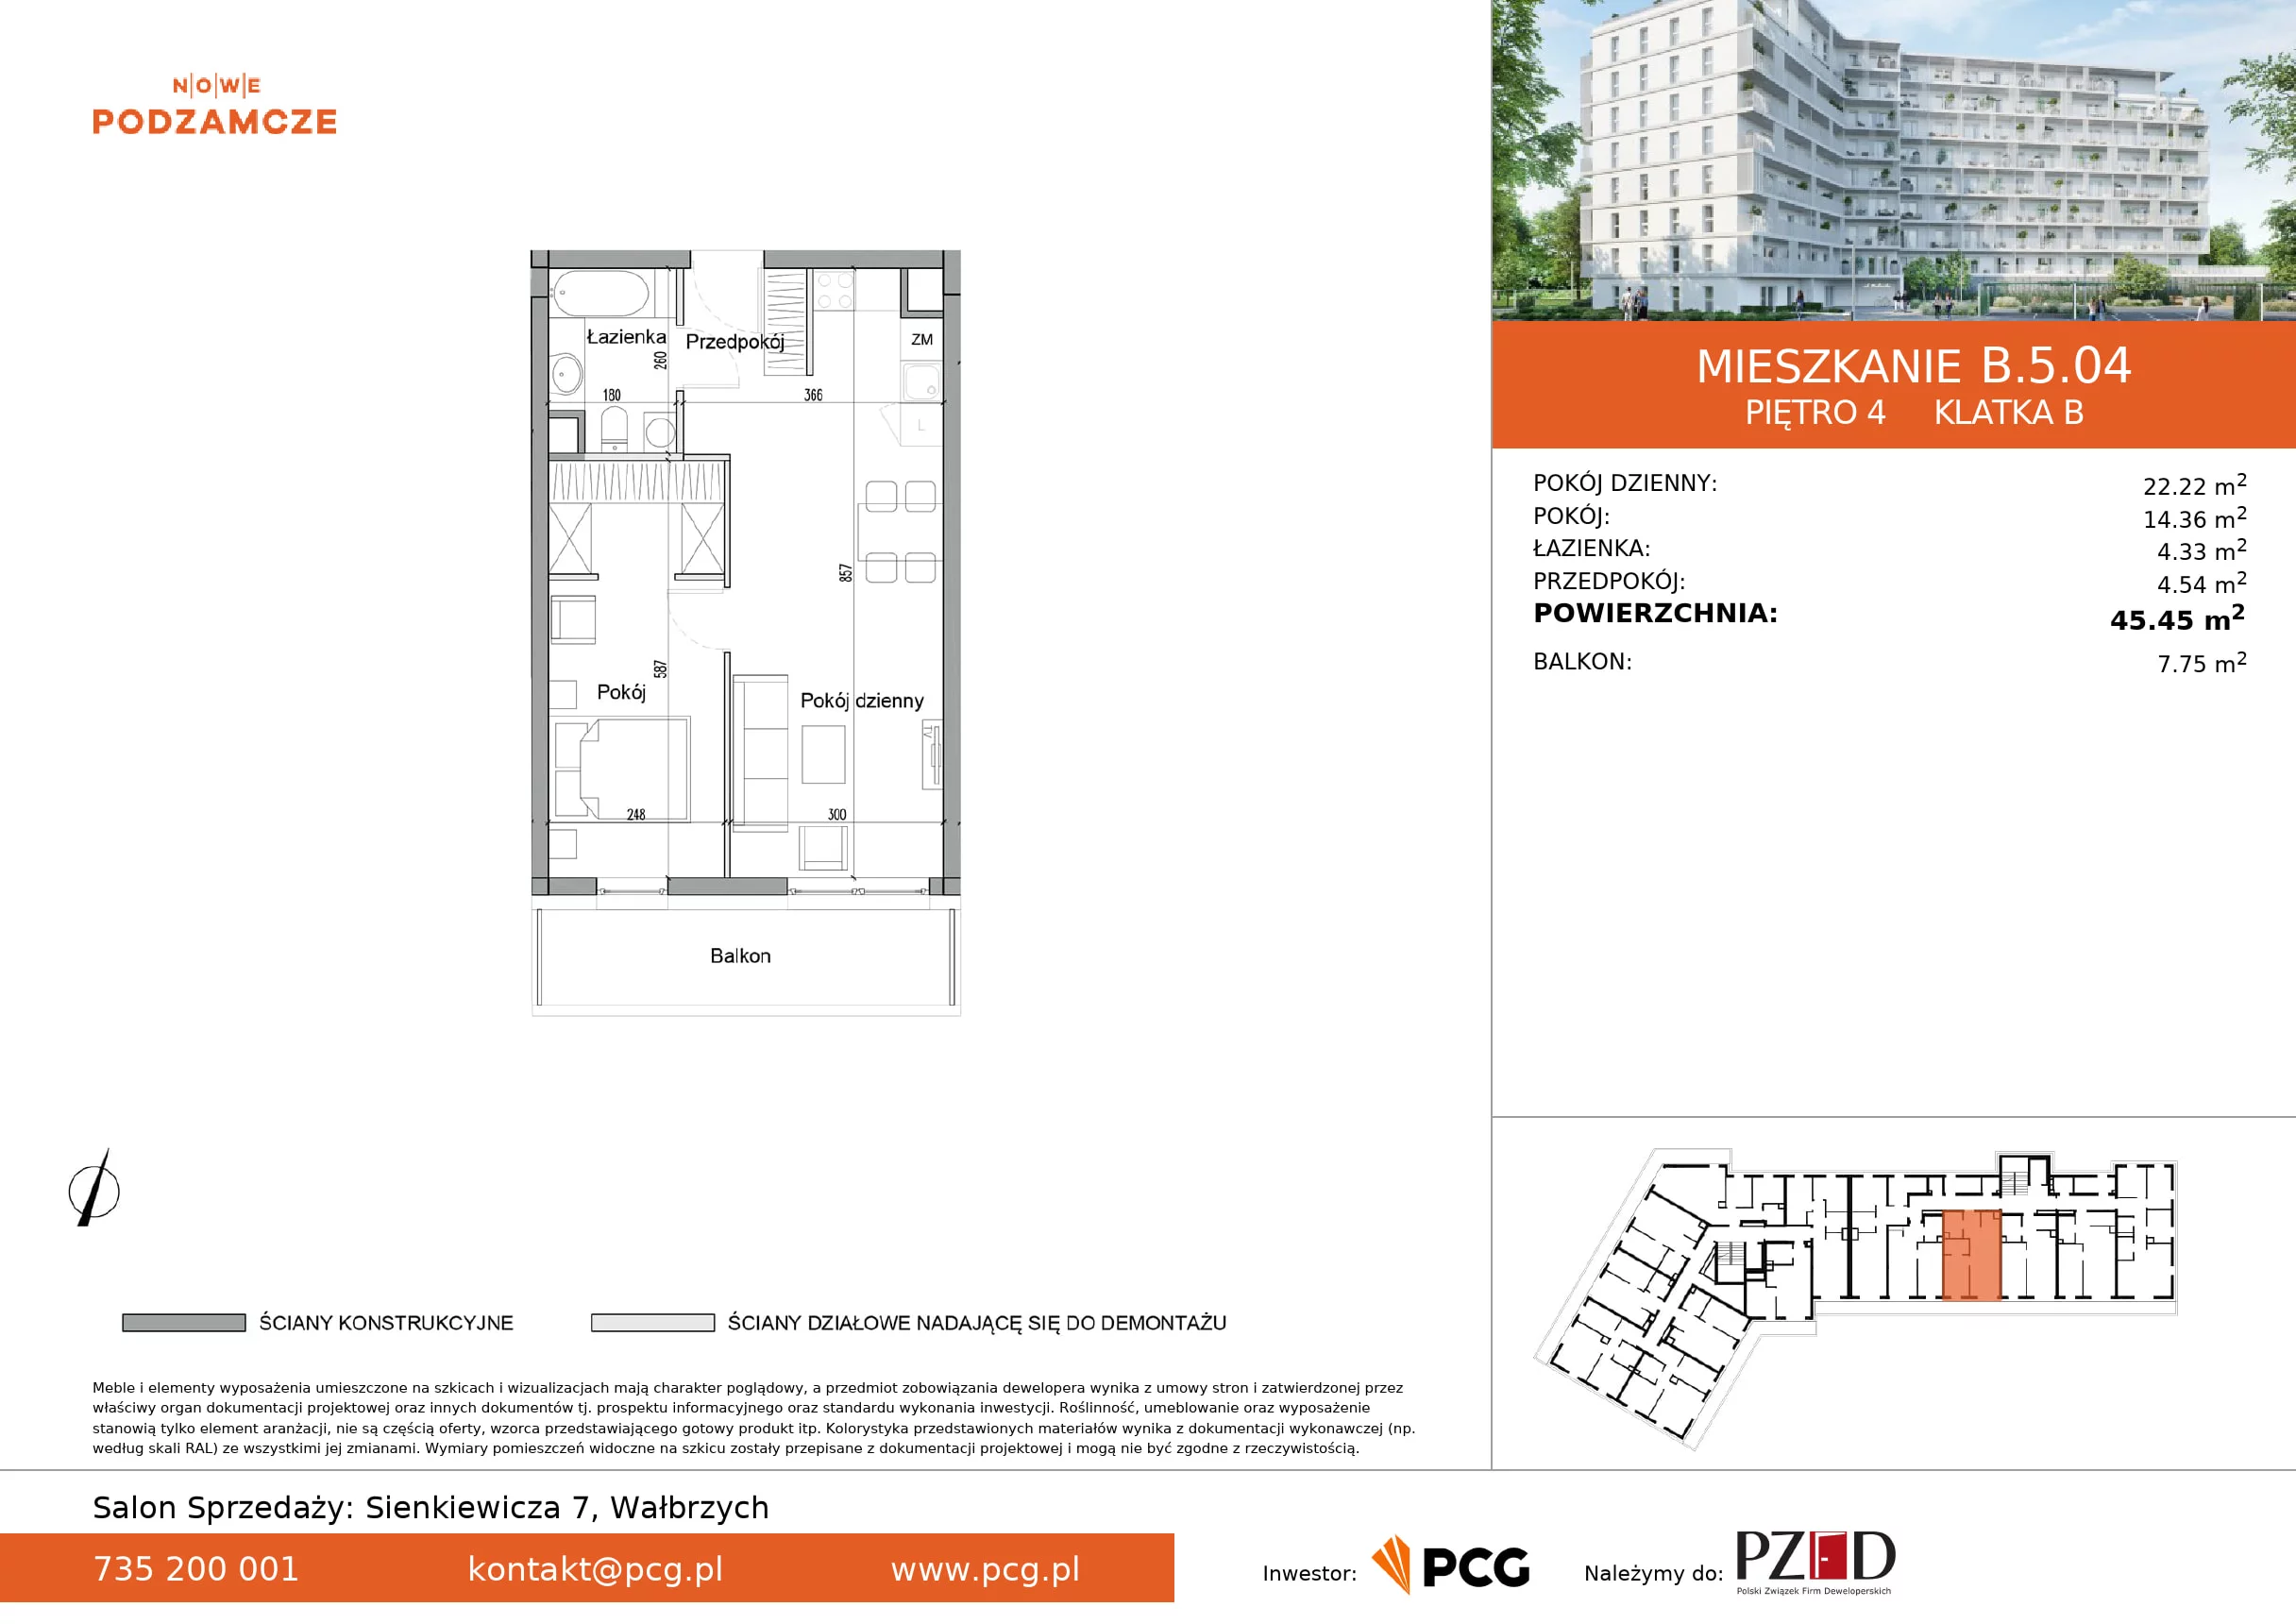 Mieszkanie 45,45 m², piętro 4, oferta nr B.5.04, Nowe Podzamcze, Wałbrzych, al. Podwale 2, 4